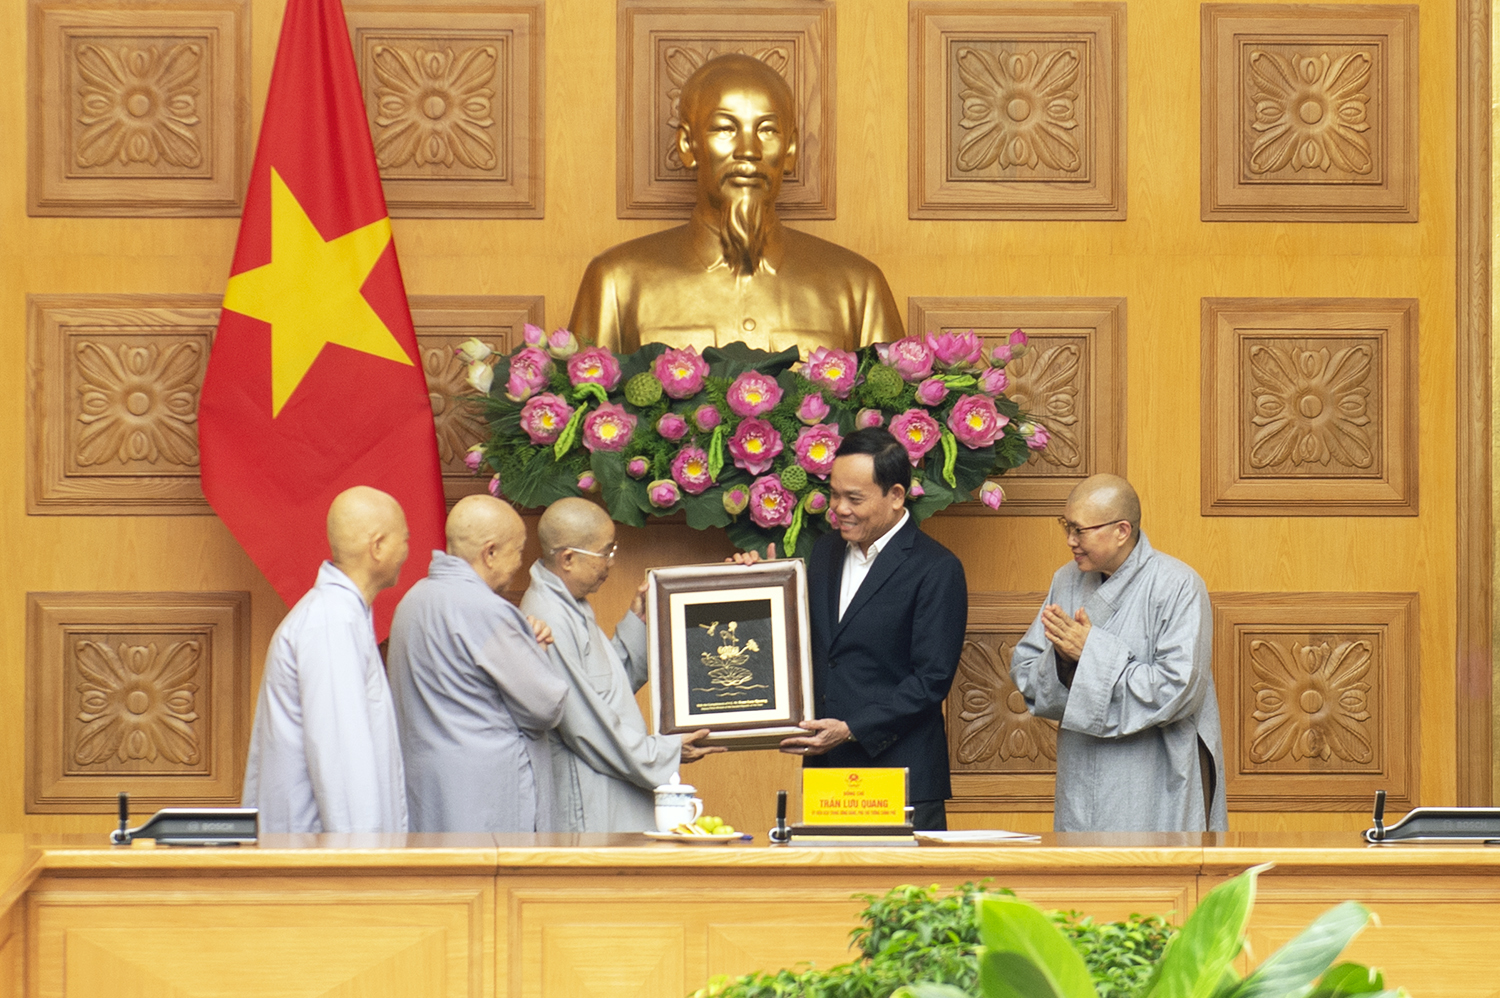 Phó Thủ tướng Trần Lưu Quang tặng quà lãnh đạo Phân ban Ni giới Trung ương - Ảnh: VGP/Hải Minh